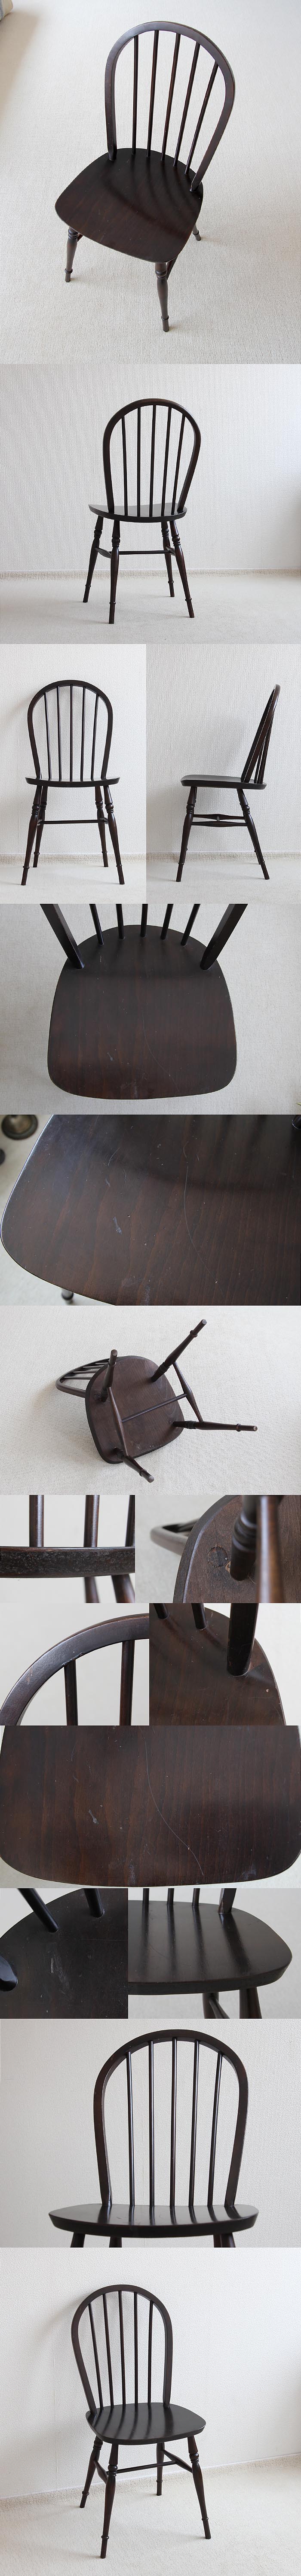 イギリス ヴィンテージ キッチンチェア 木製椅子 英国 家具「フープバックチェア」V-437